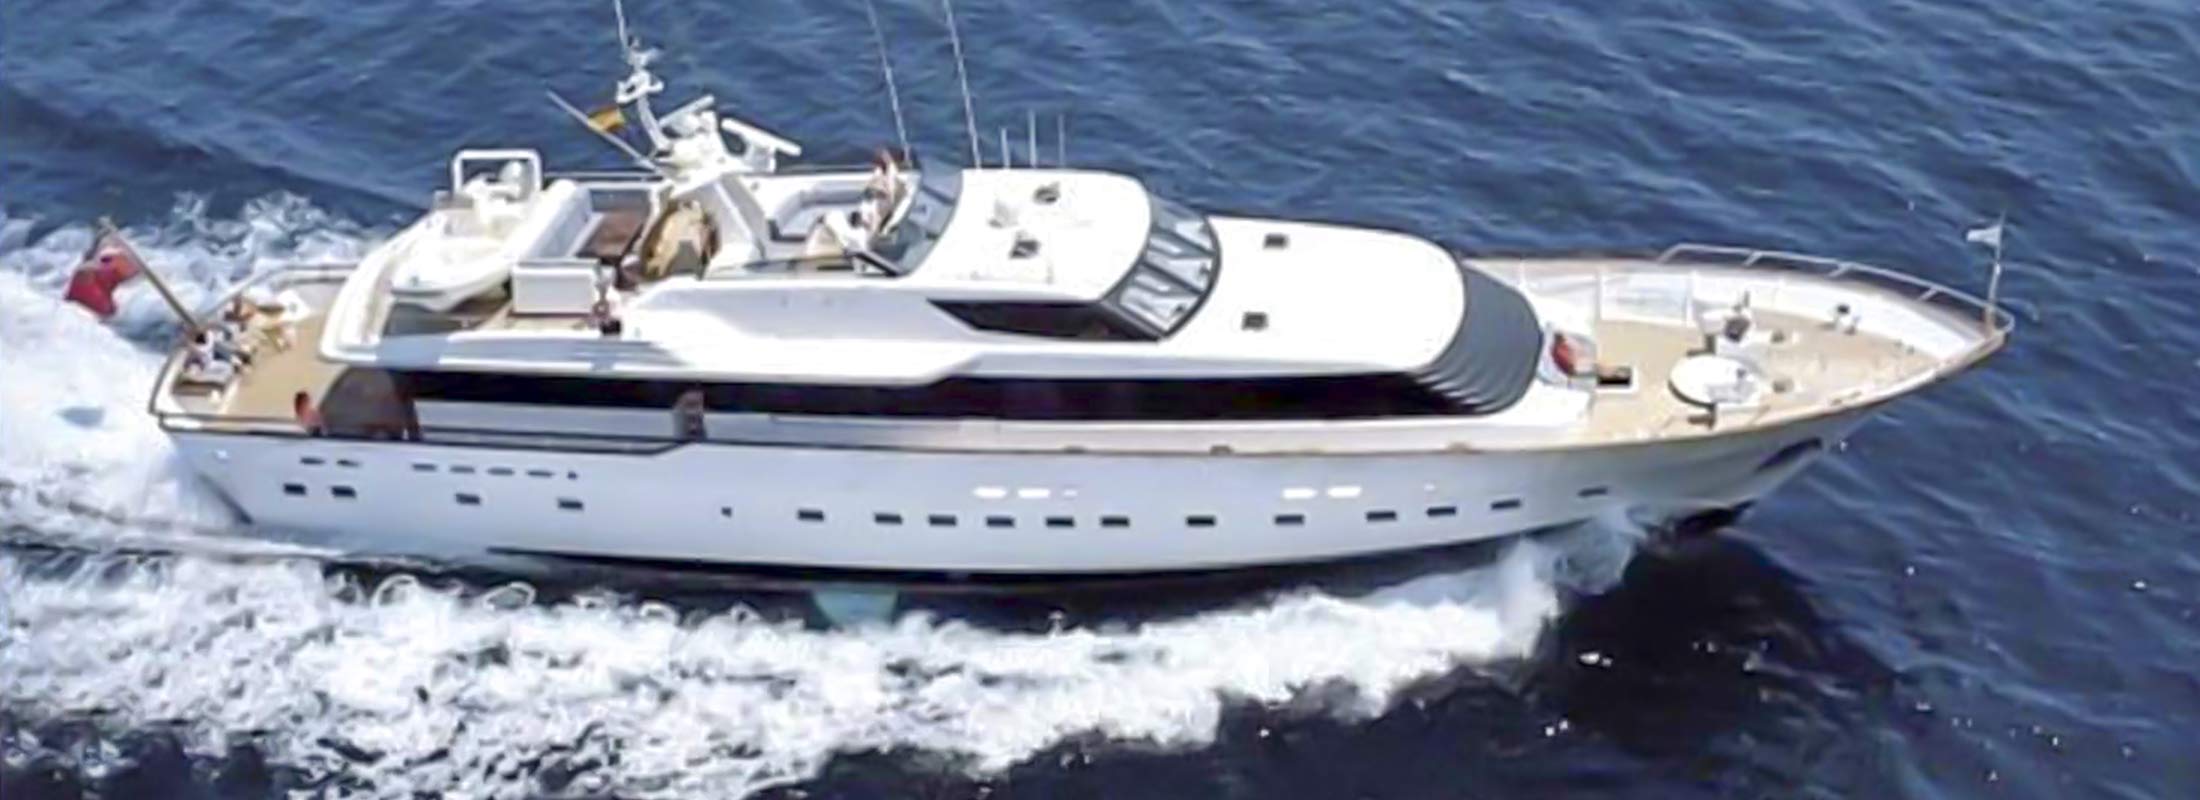 Atlantic Endeavour Motor Yacht for Charter Mediterranean slider 2